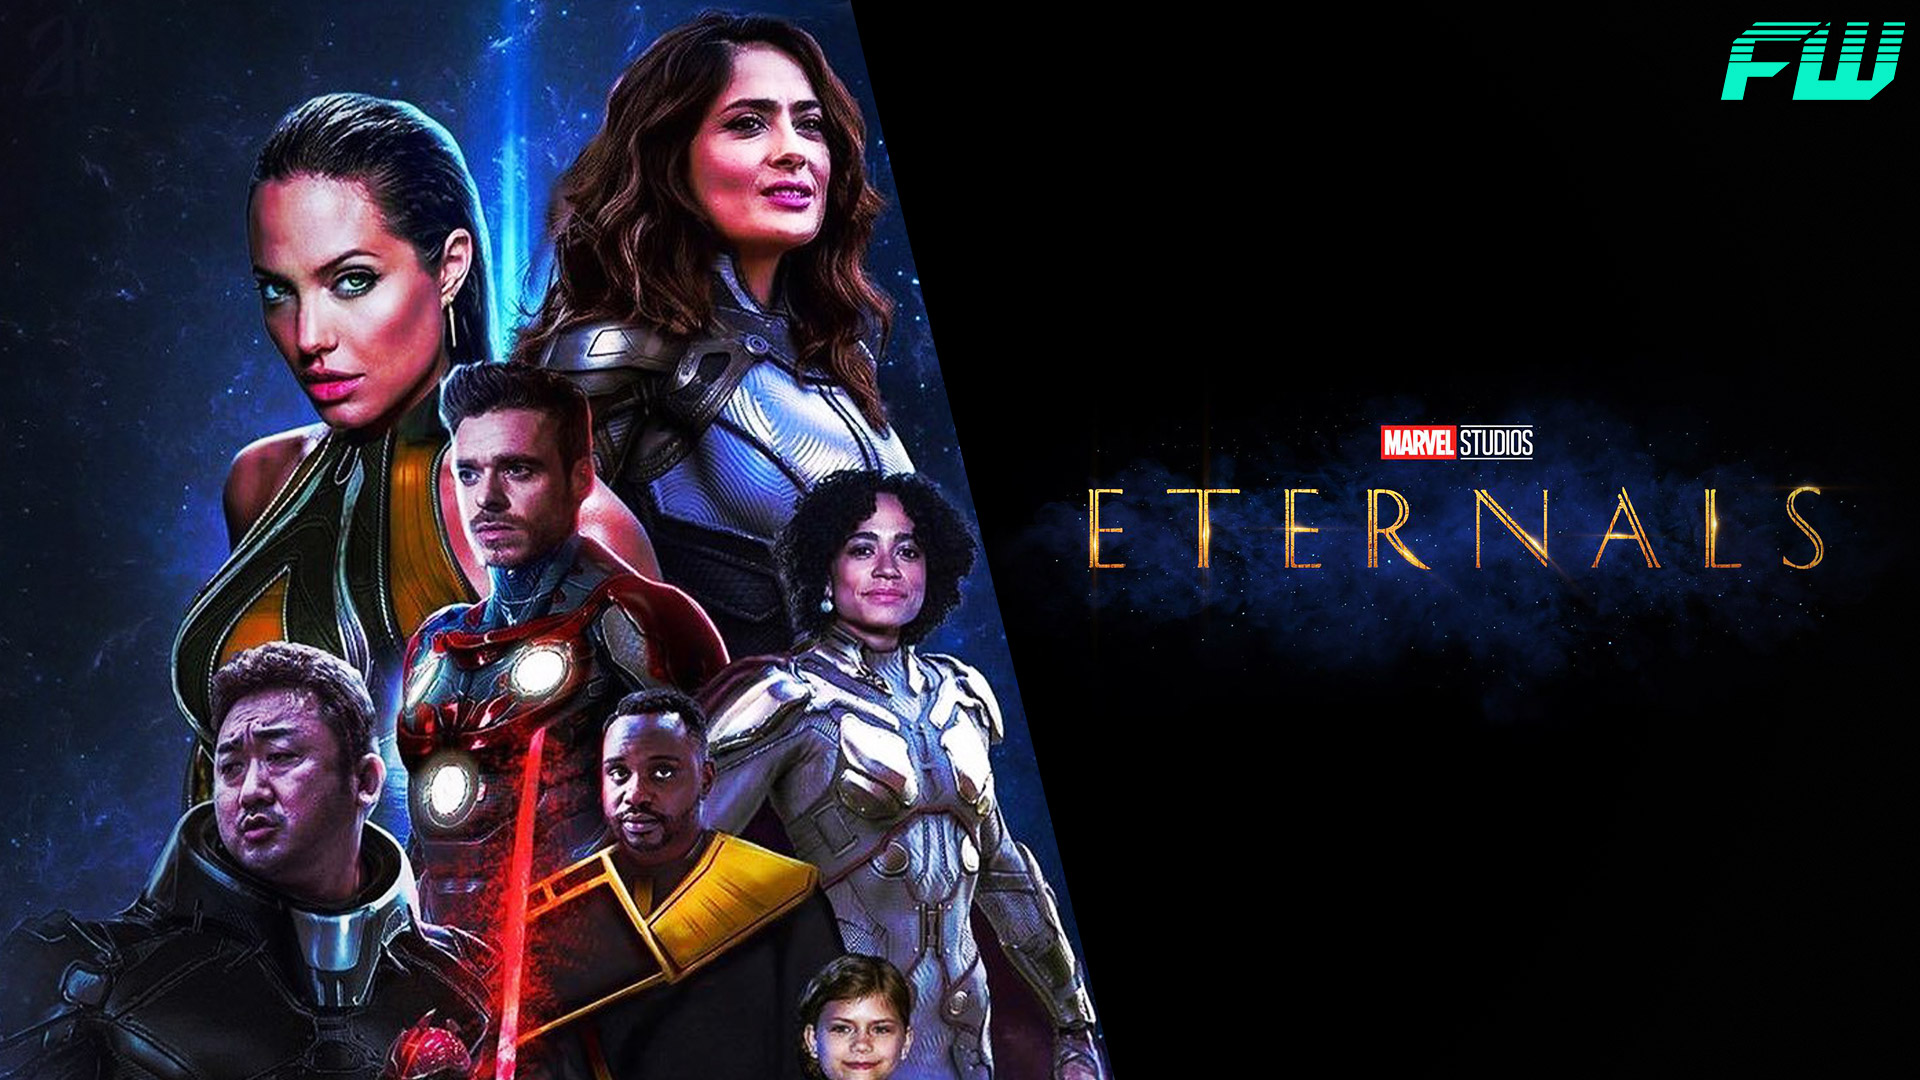 The Eternals Marvel Film Gets A Slight Title Change